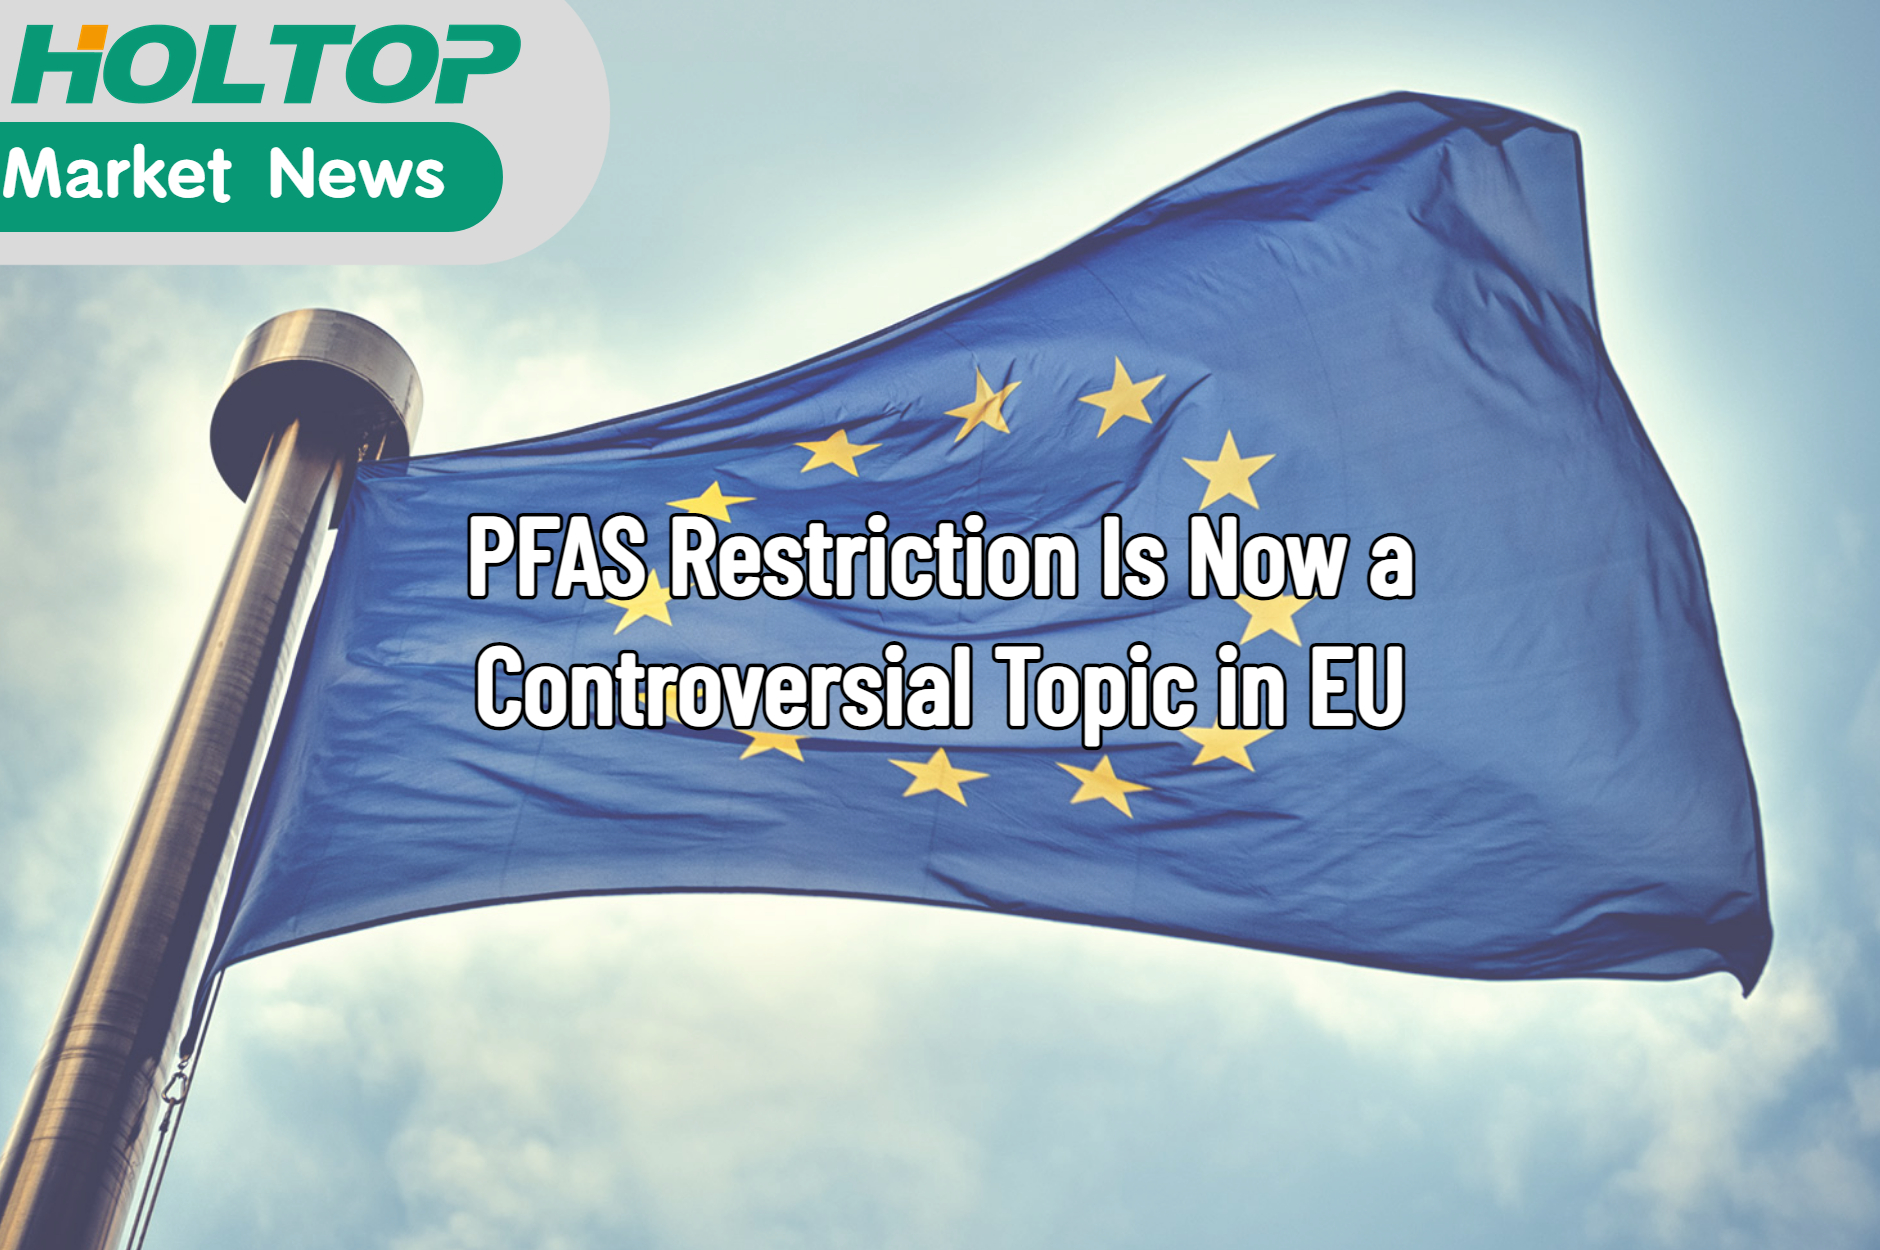 Ograniczenia PFAS są obecnie kontrowersyjnym tematem w UE